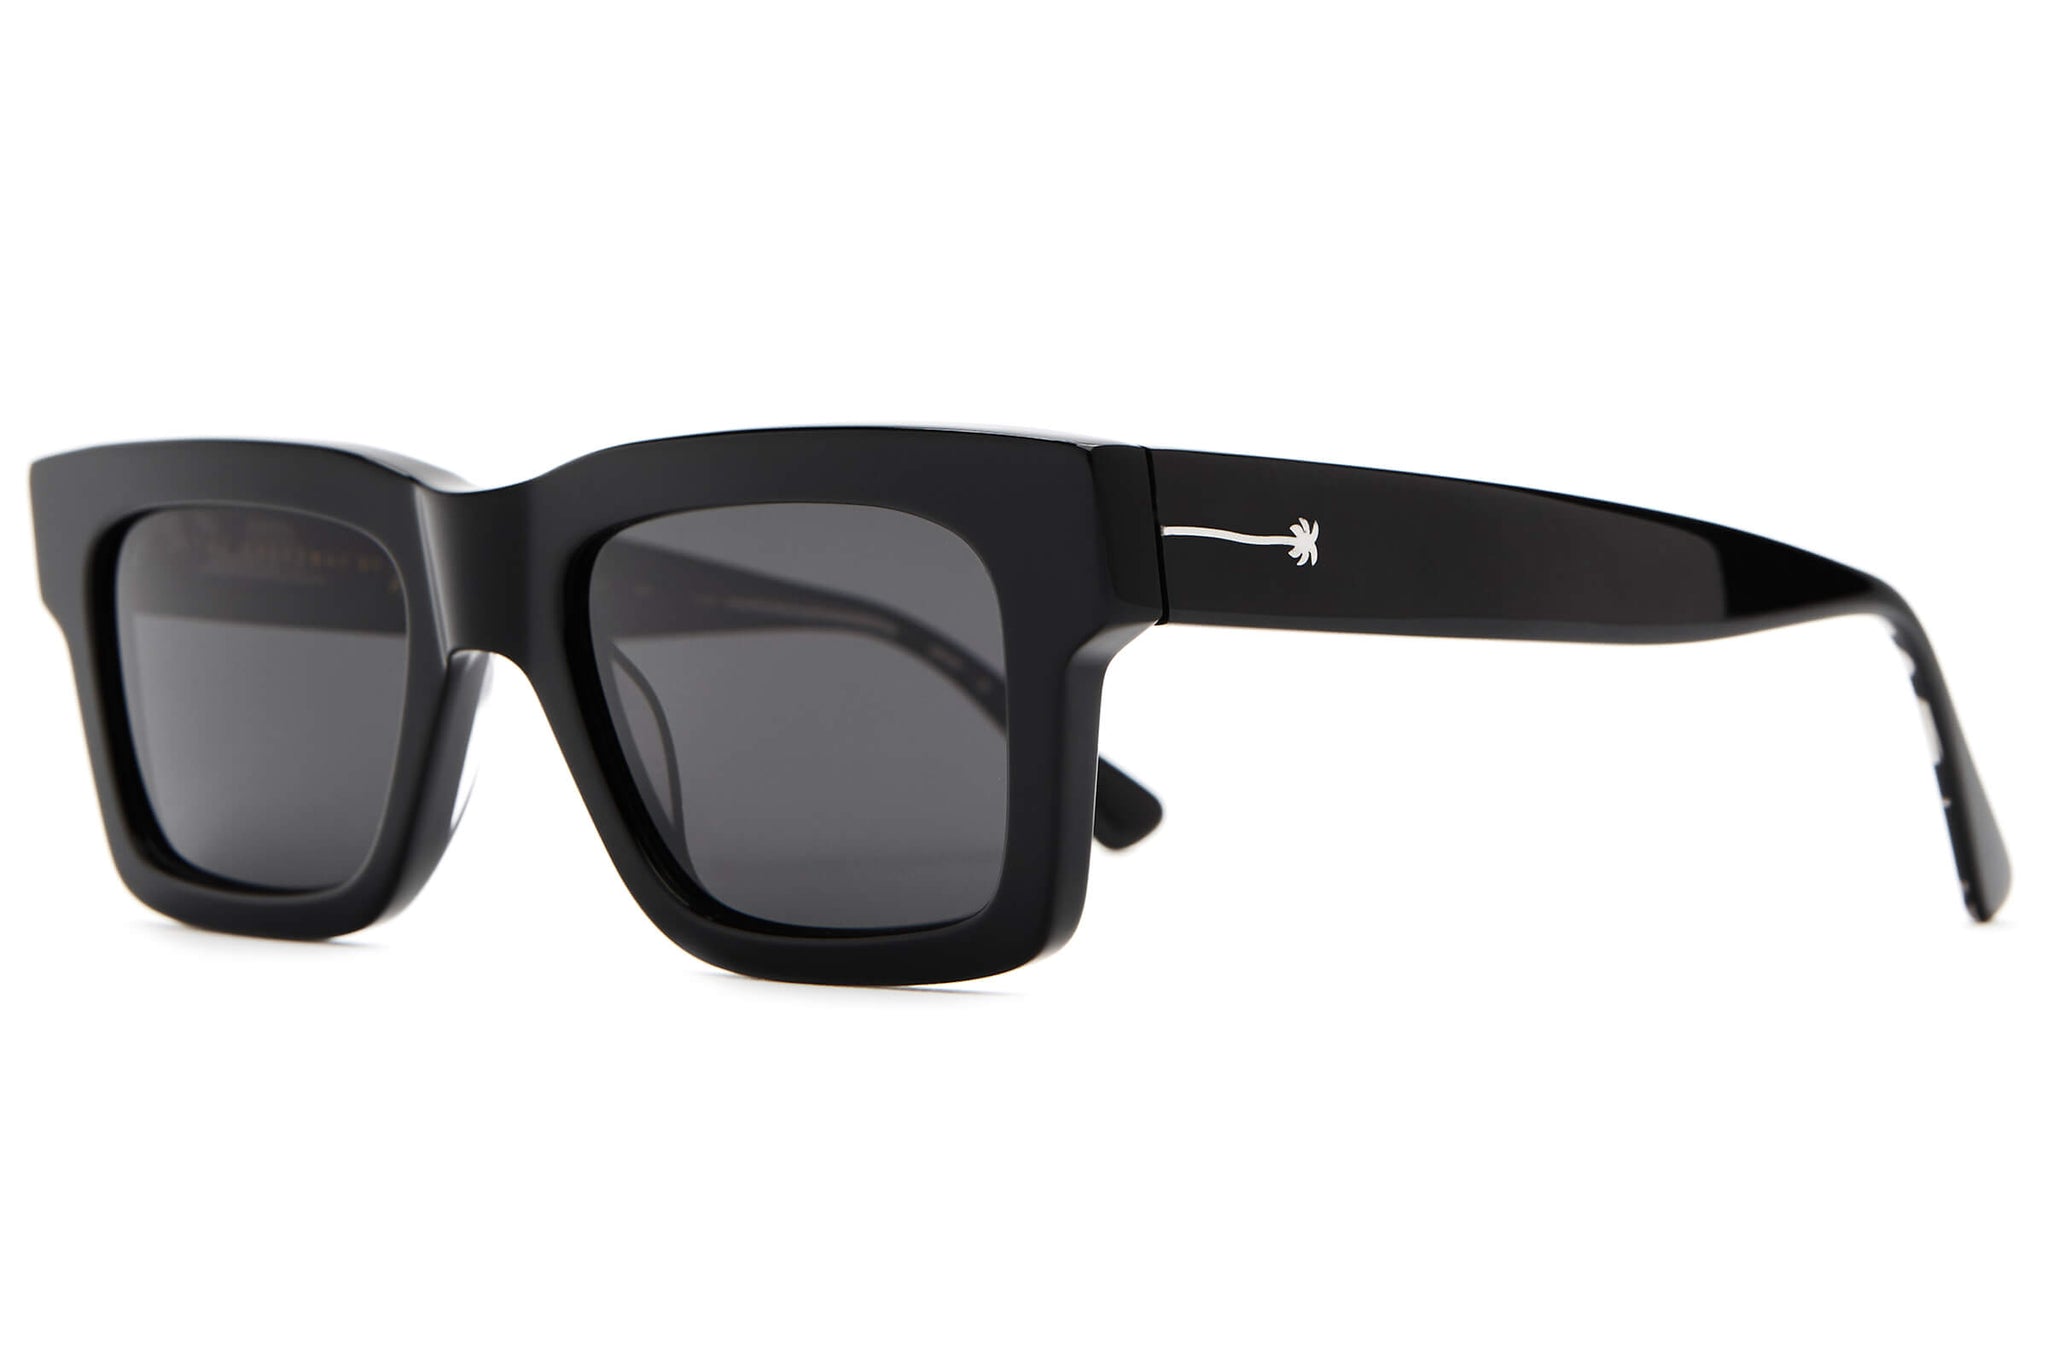 The Crap Sunglasses Polarized | Speedway Crap® Johnson Blake Eyewear Black – by Eyewear